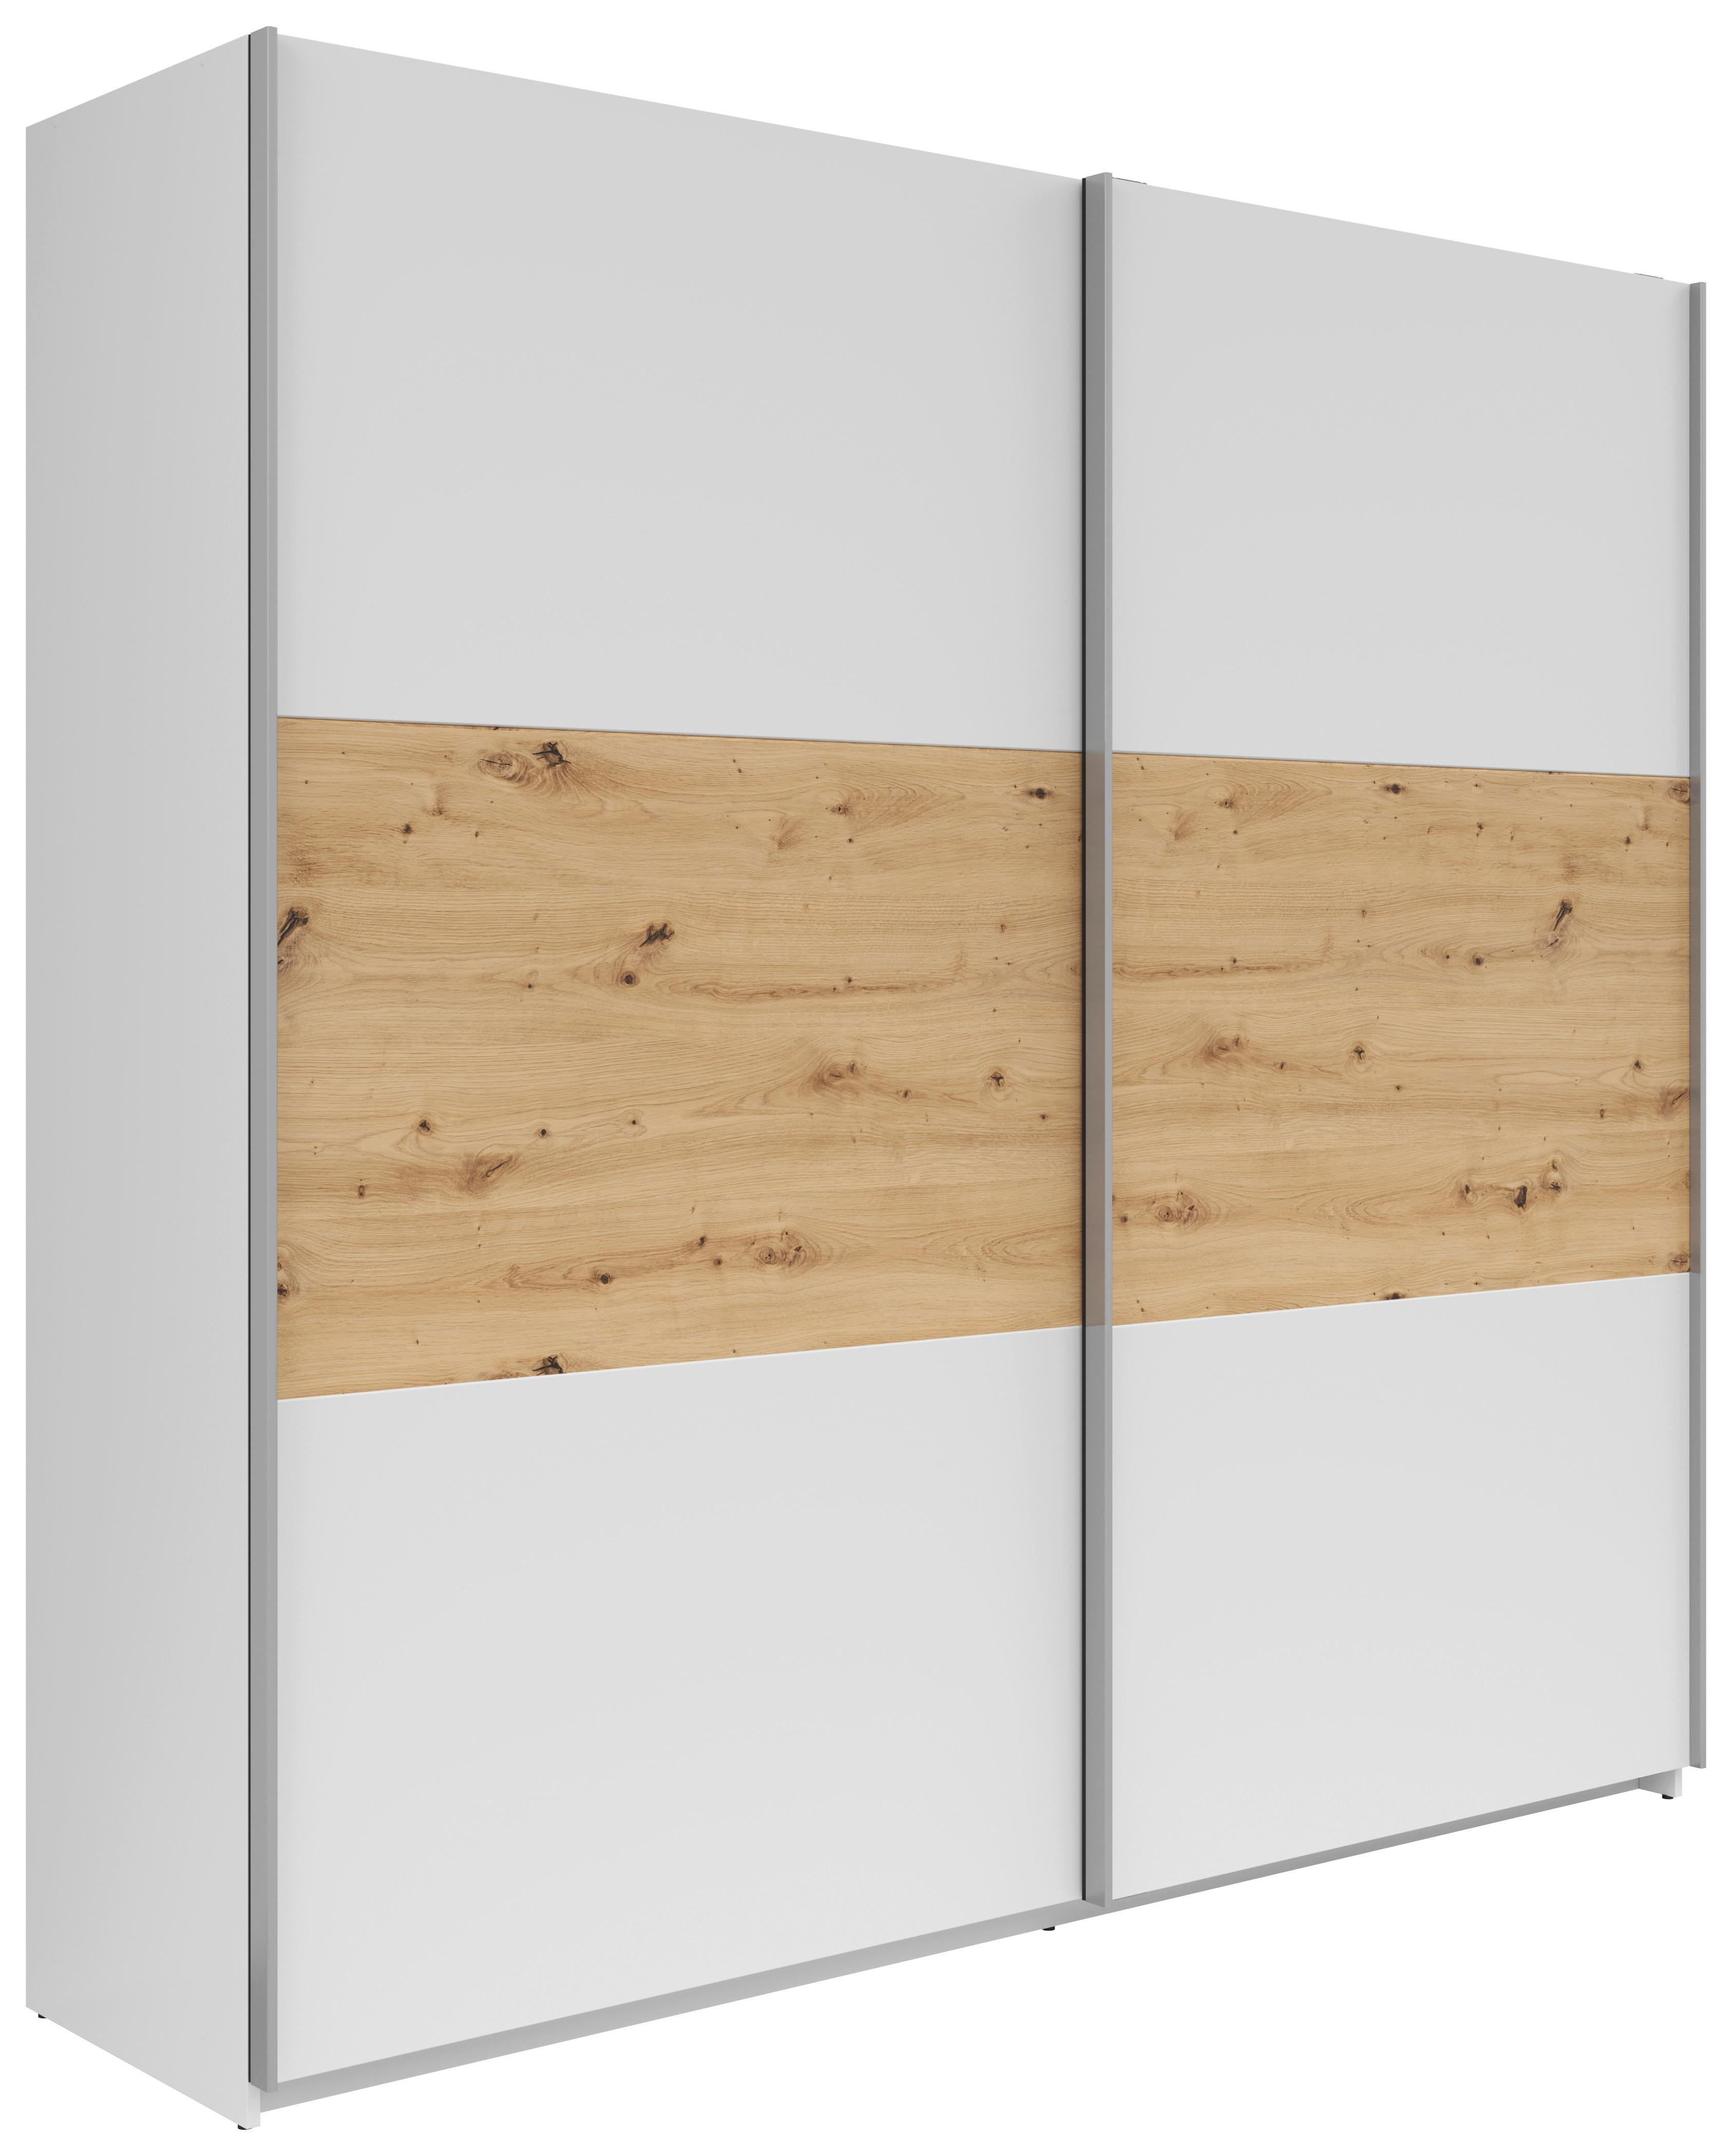 Šatní Skříň S Posuvnými Dveřmi Saturn,bílá/dub Artisan - bílá/barvy stříbra, Konvenční, kov/kompozitní dřevo (218/210/59cm)